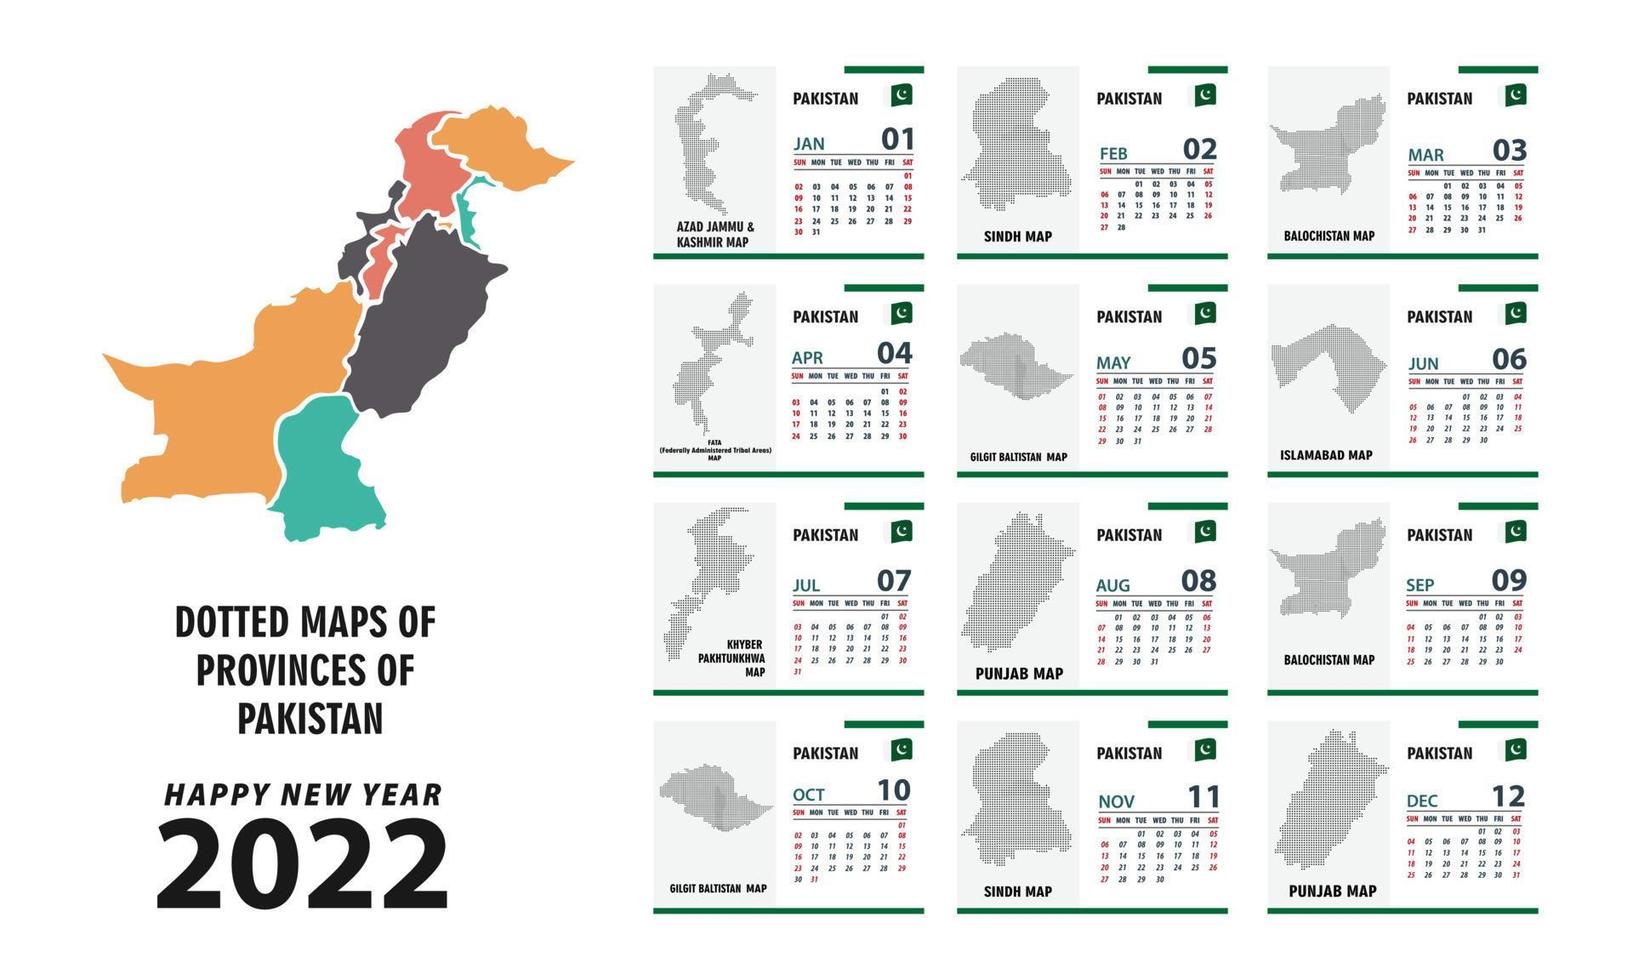 calendrier 2022. carte des provinces du pakistan la semaine commence le dimanche. vecteur du calendrier du nouvel an 2022 dans un style simple de table propre et minimal sur fond blanc